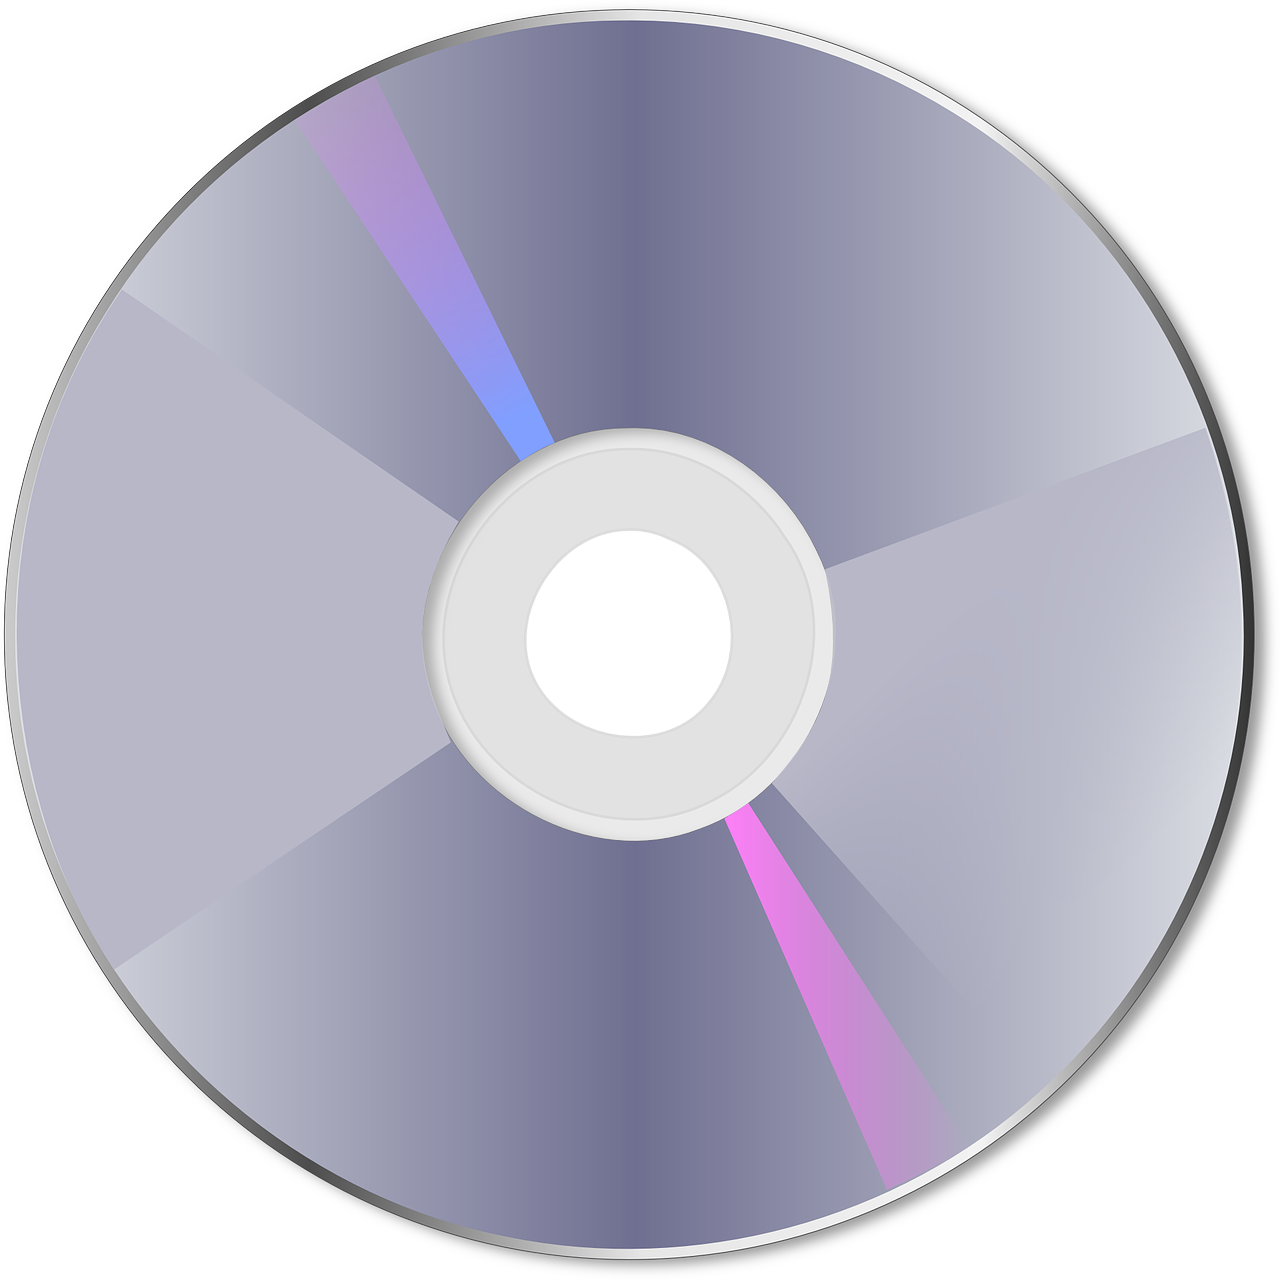 Comment nettoyer un CD rayé facilement et efficacement ?